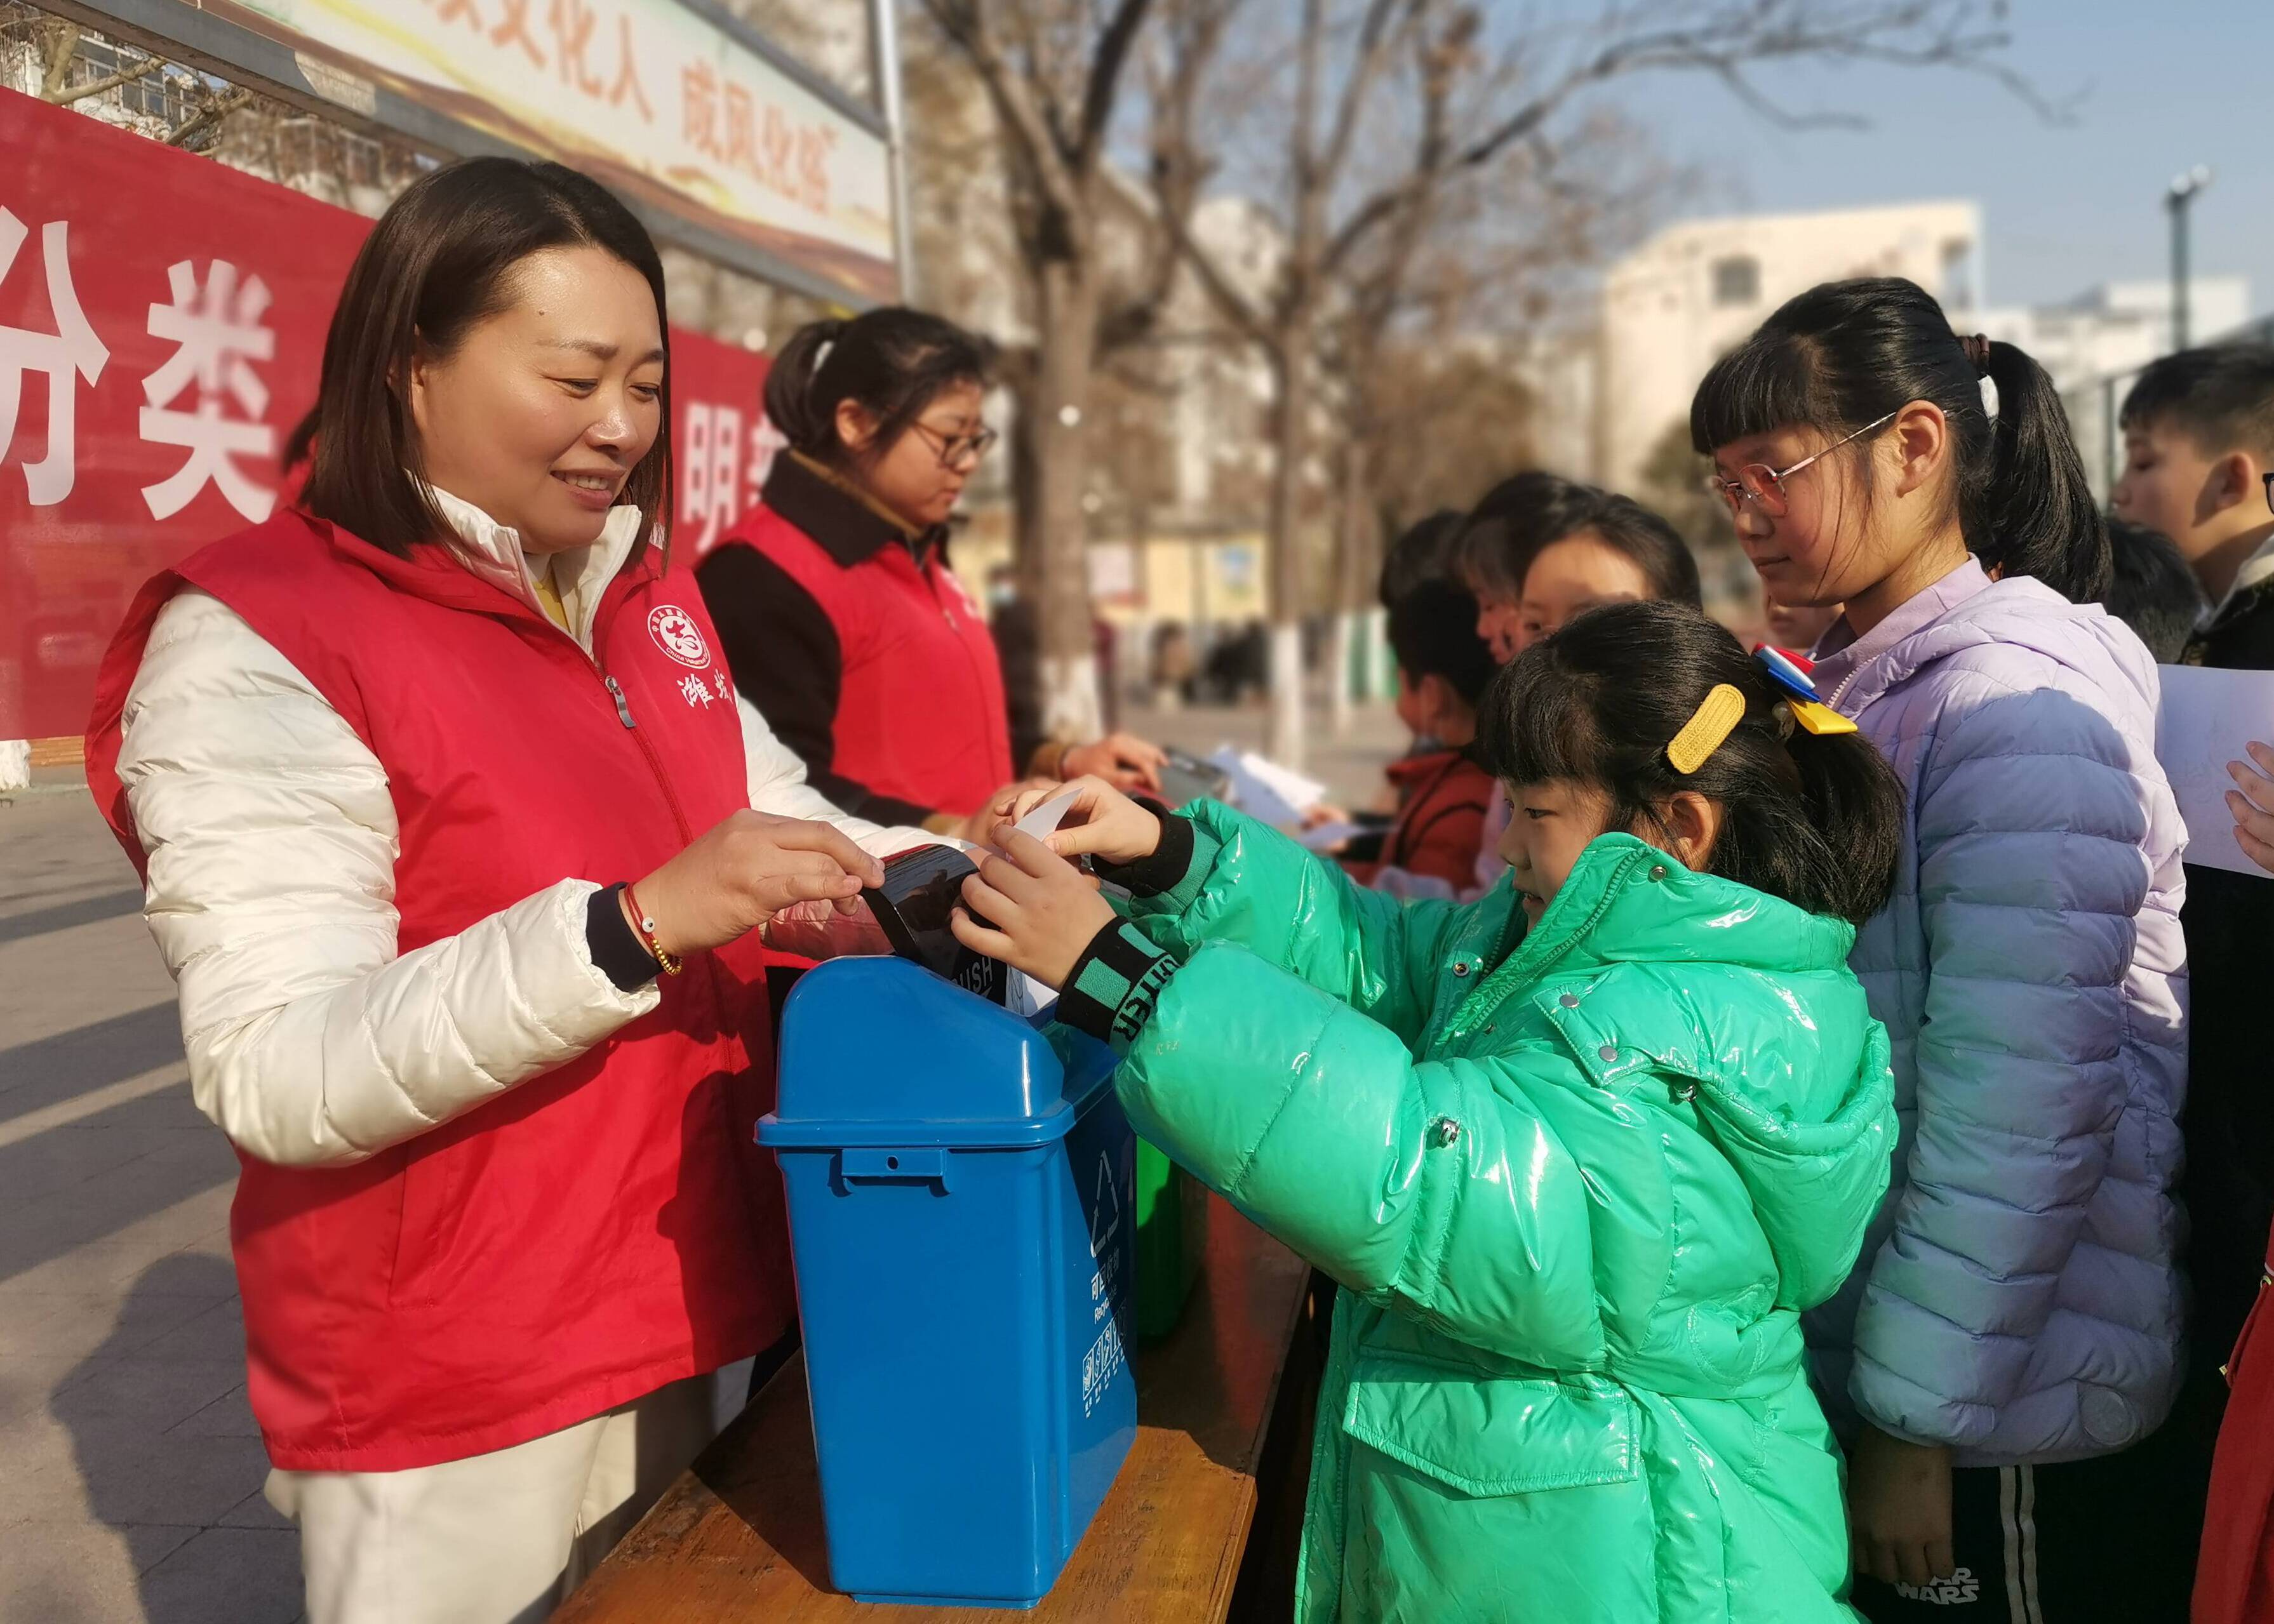 潍坊增福堂社区开展“垃圾分类”主题宣传活动 倡导绿色环保理念